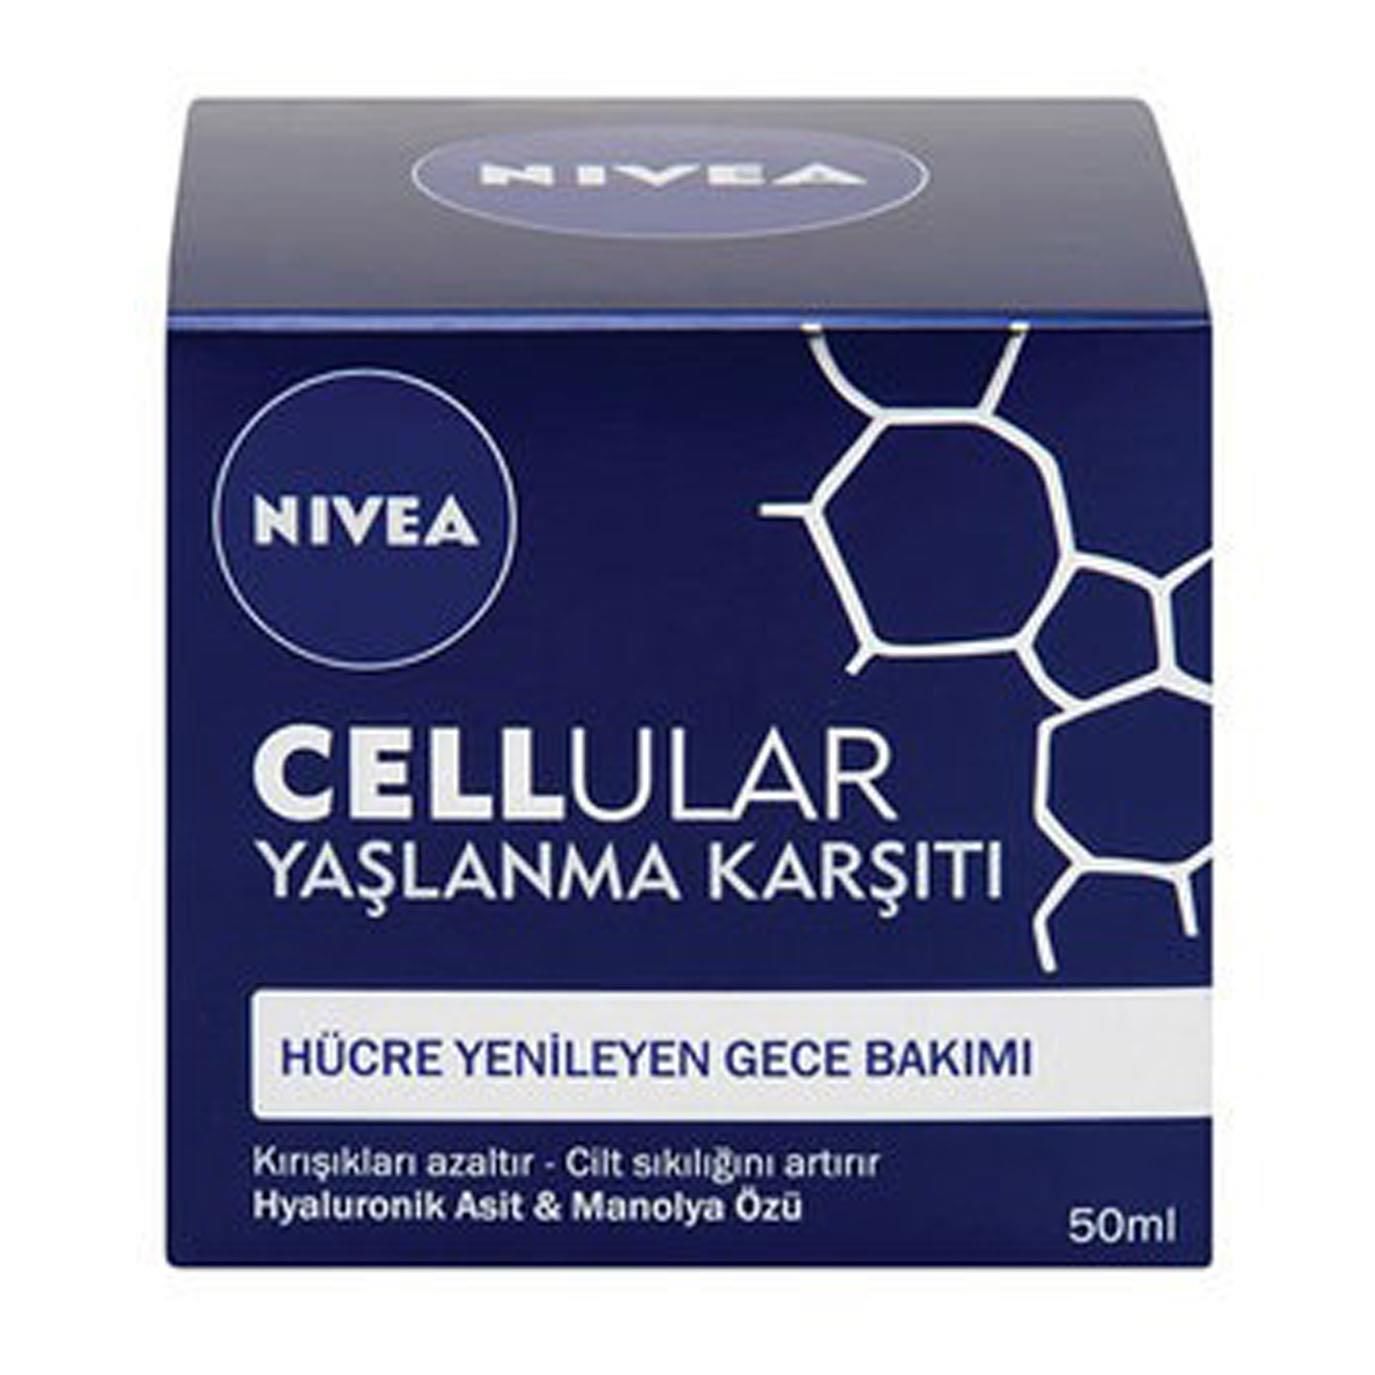 Nivea Cellular Yaşlanma Karşıtı Hücre Yenileyici Gece Kremi Spf 15 50 ml